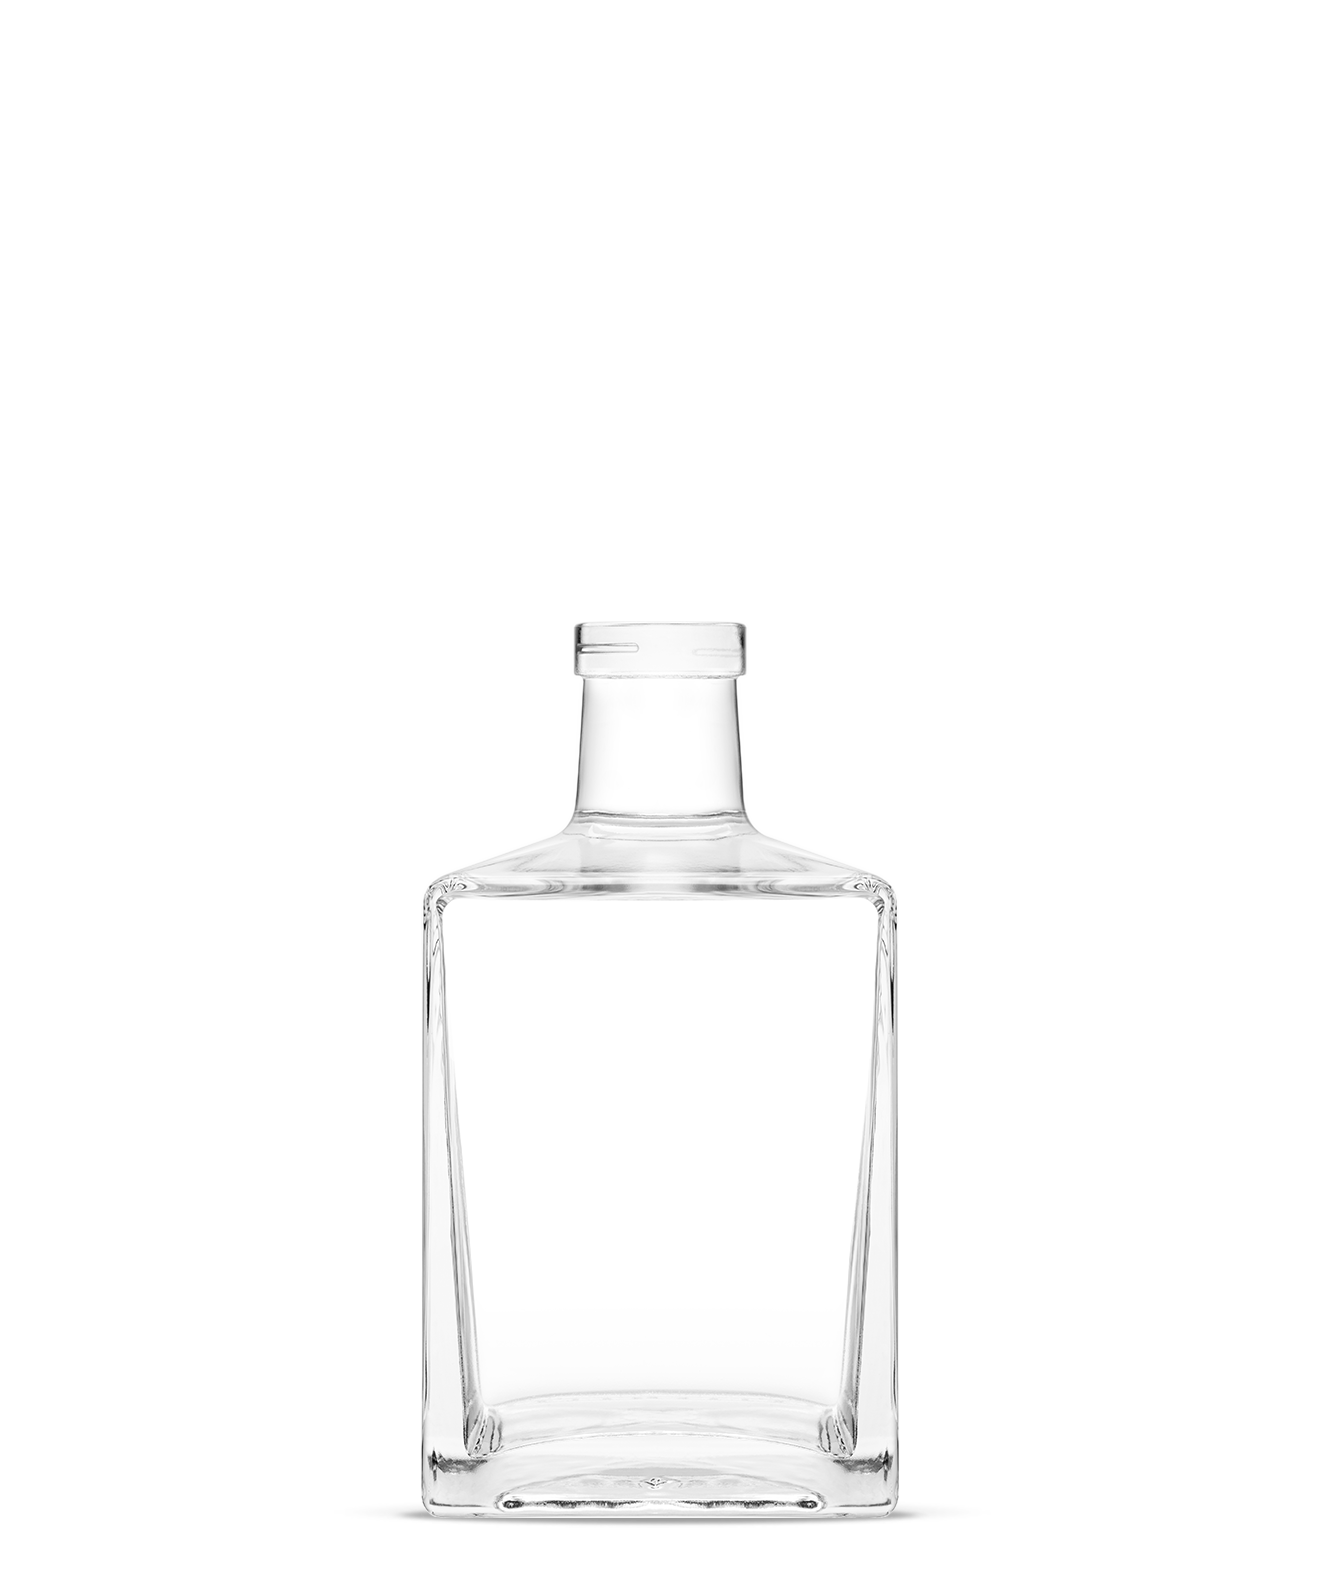 pamela-eco-spirits-bottles-vetroelite-view